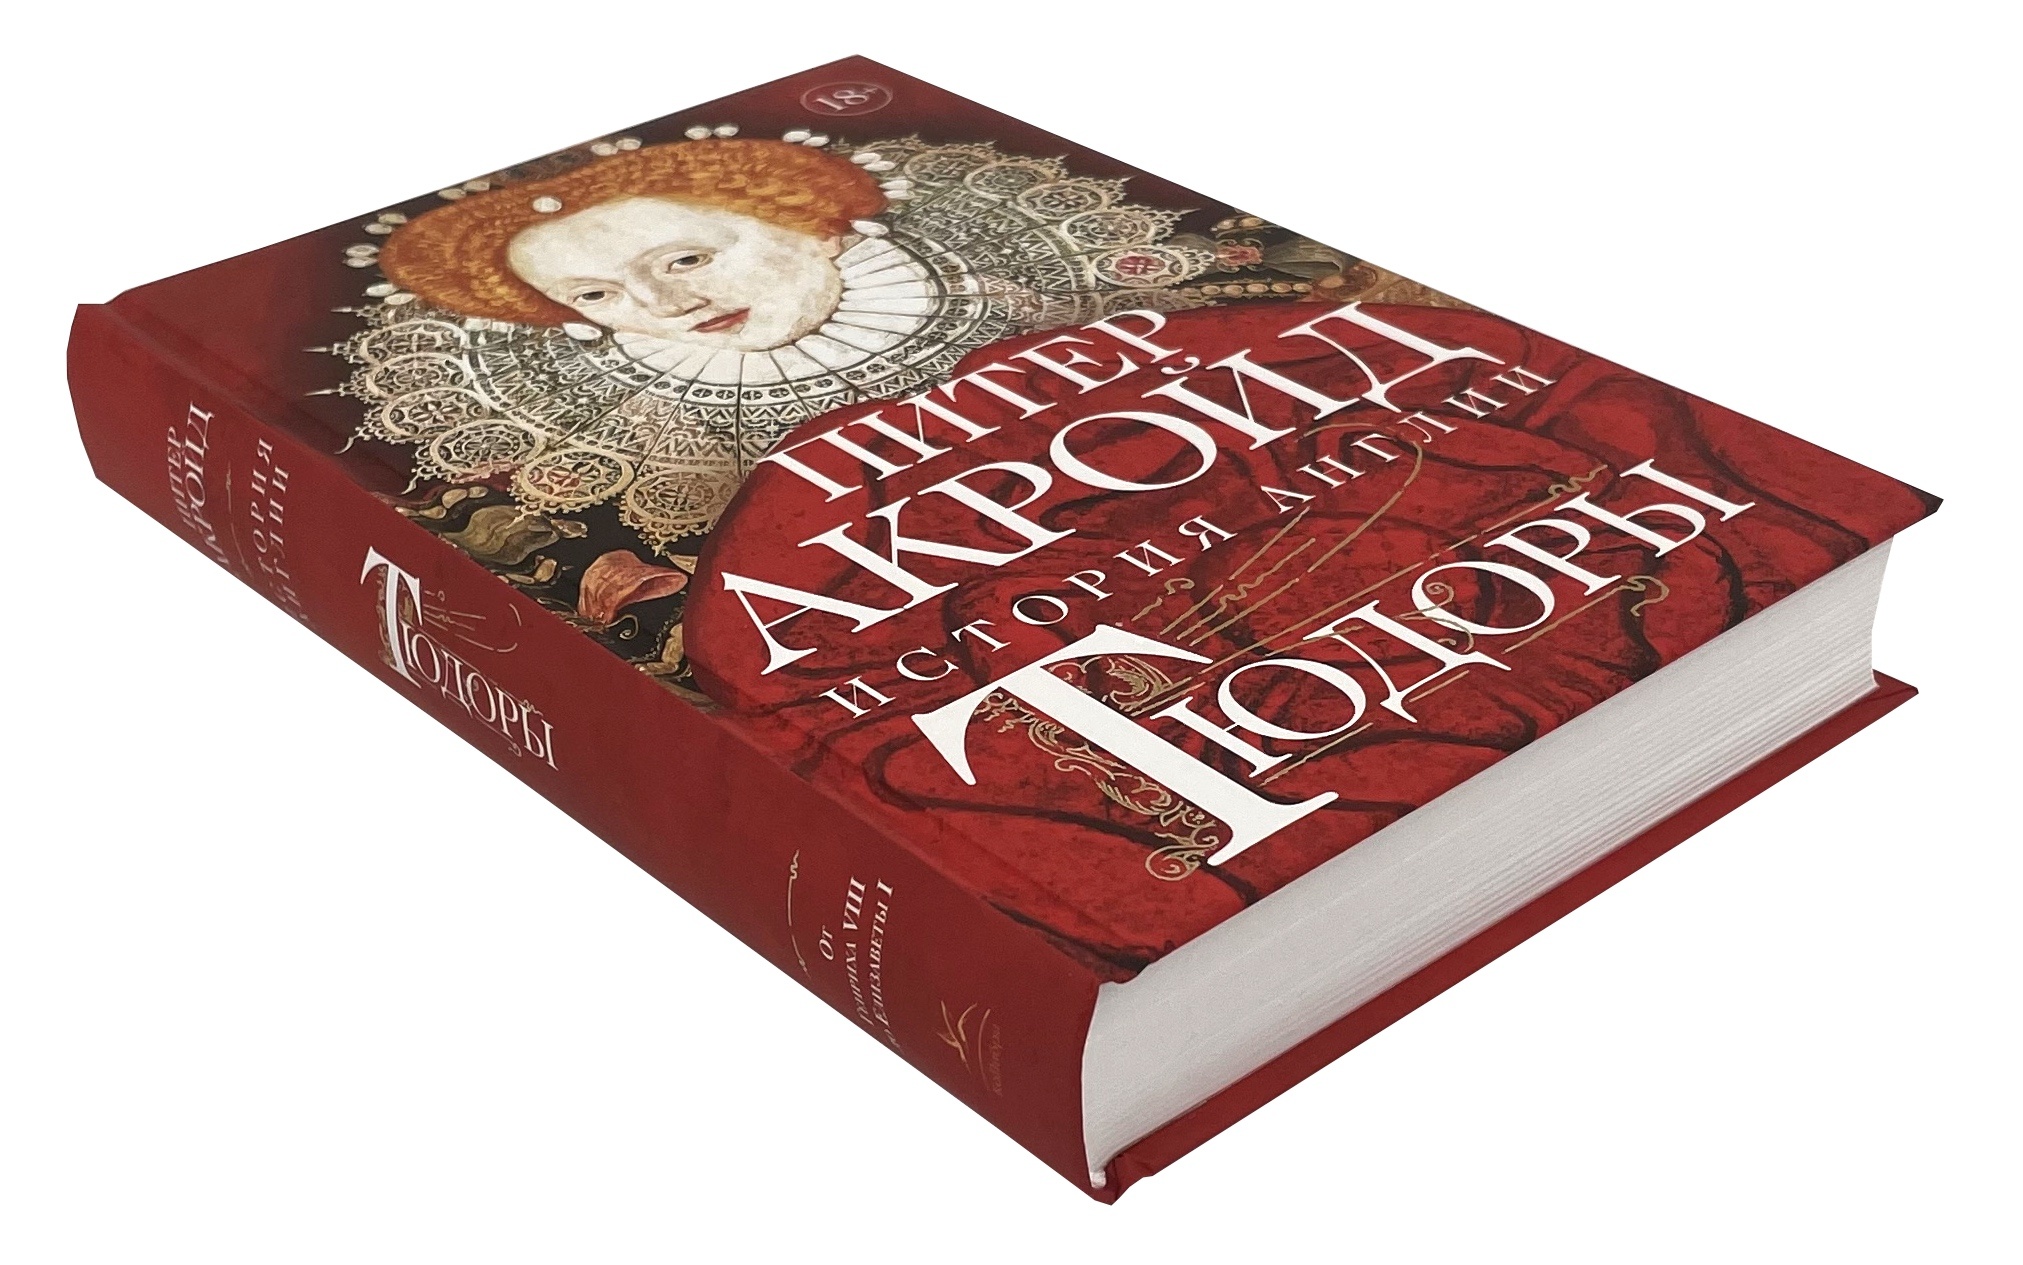 Тюдоры. История Англии. От Генриха VIII до Елизаветы I. Автор — Питер Акройд. 